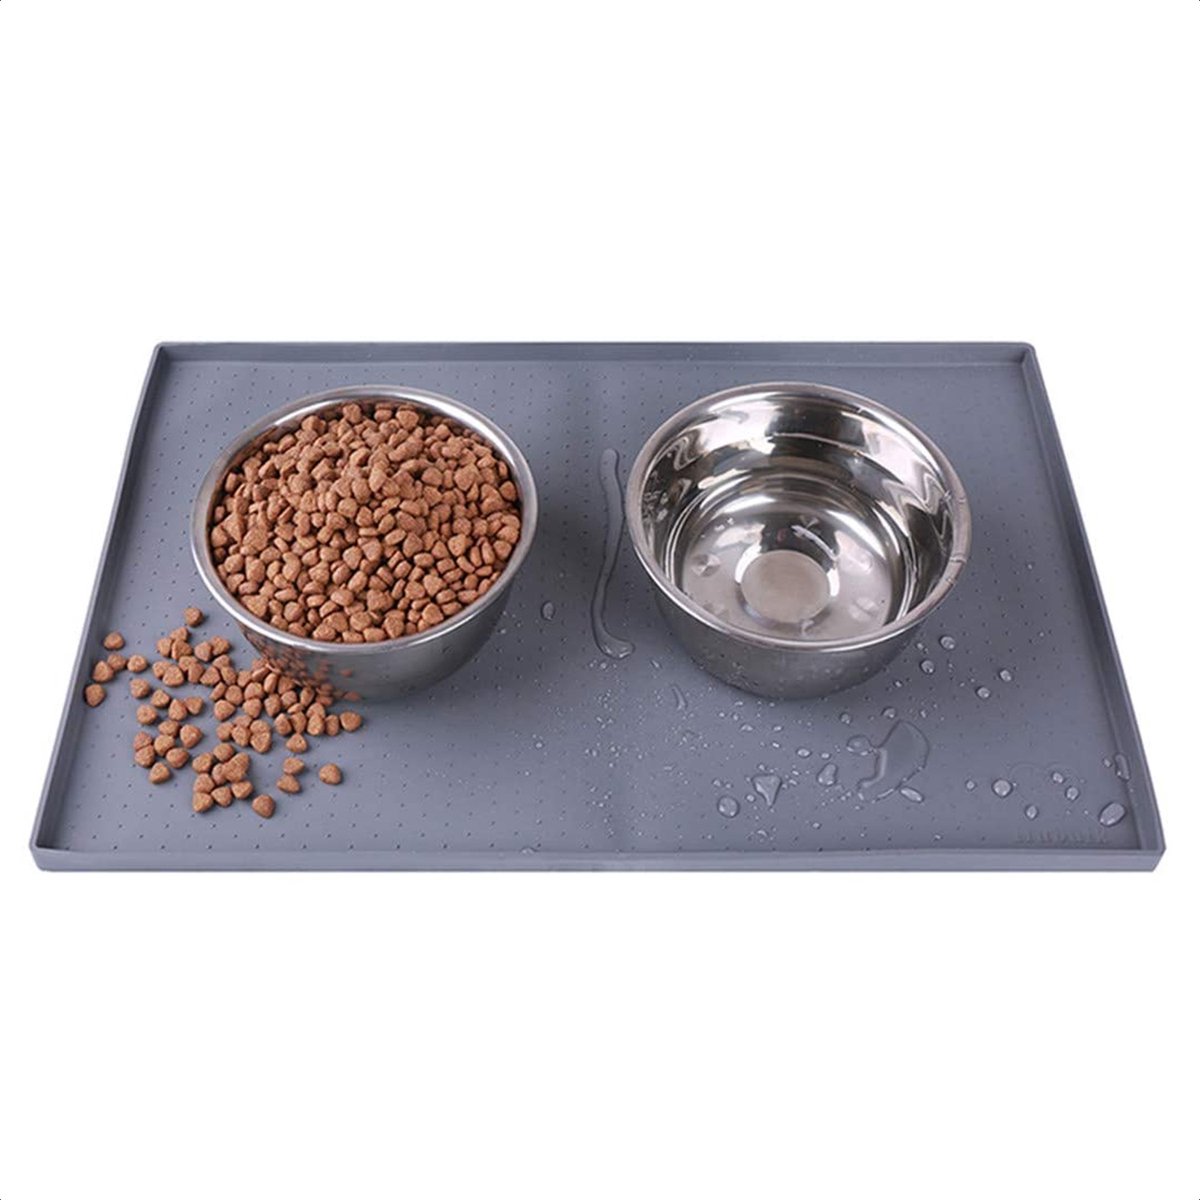 Buxibo - Siliconen Placemat voor Voerbak van Hond of Kat - Waterdichte Placemat voor Voer Huisdieren - Wasbaar - 30x47cm - Grijs